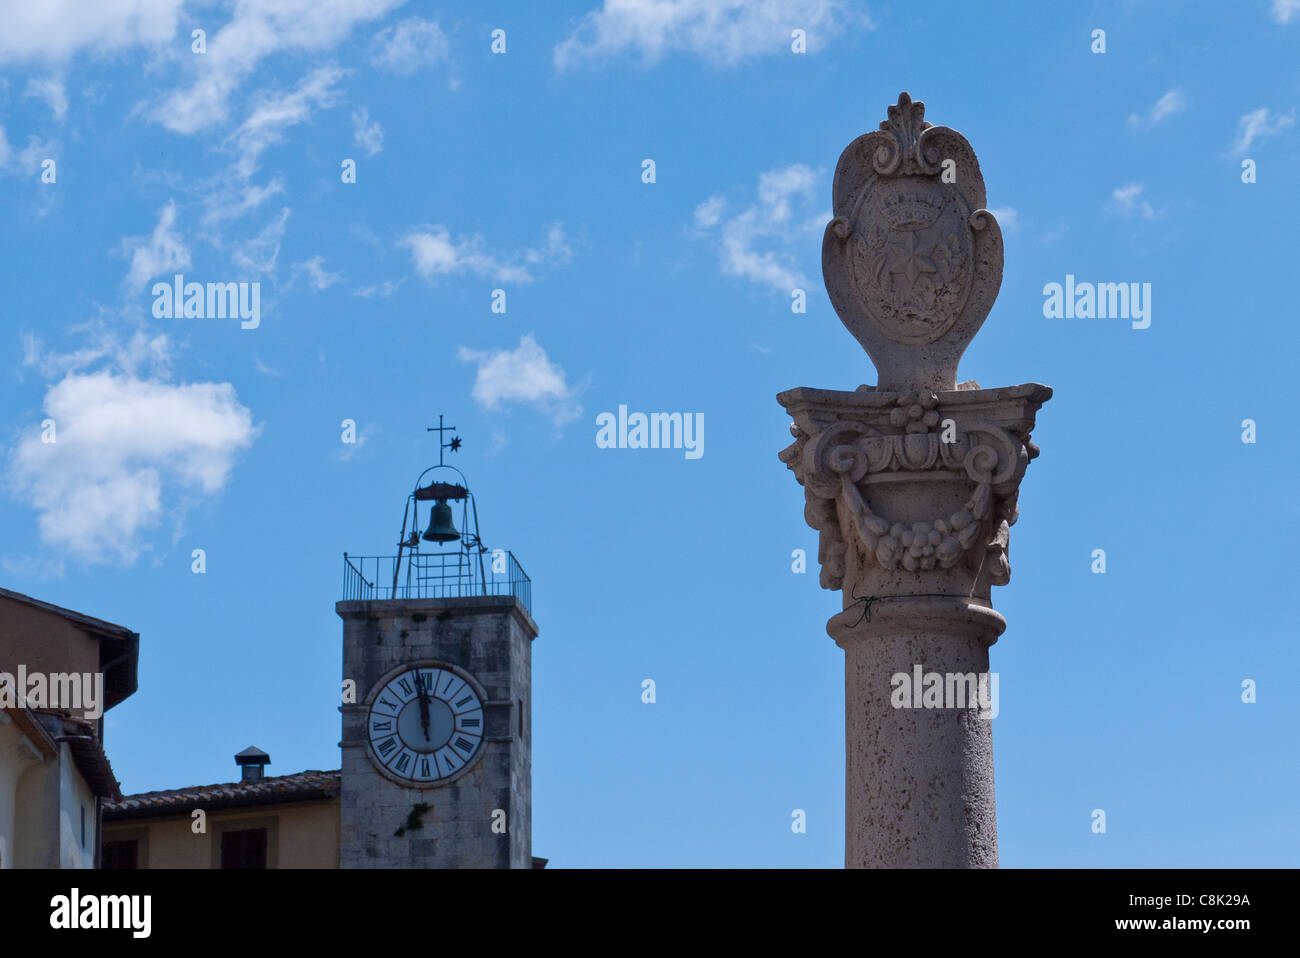 Denkmal-Spalte im Vordergrund und Uhr/Bell Tower im Hintergrund in Chianciano Terme, Umbrien, Italien. Stockfoto